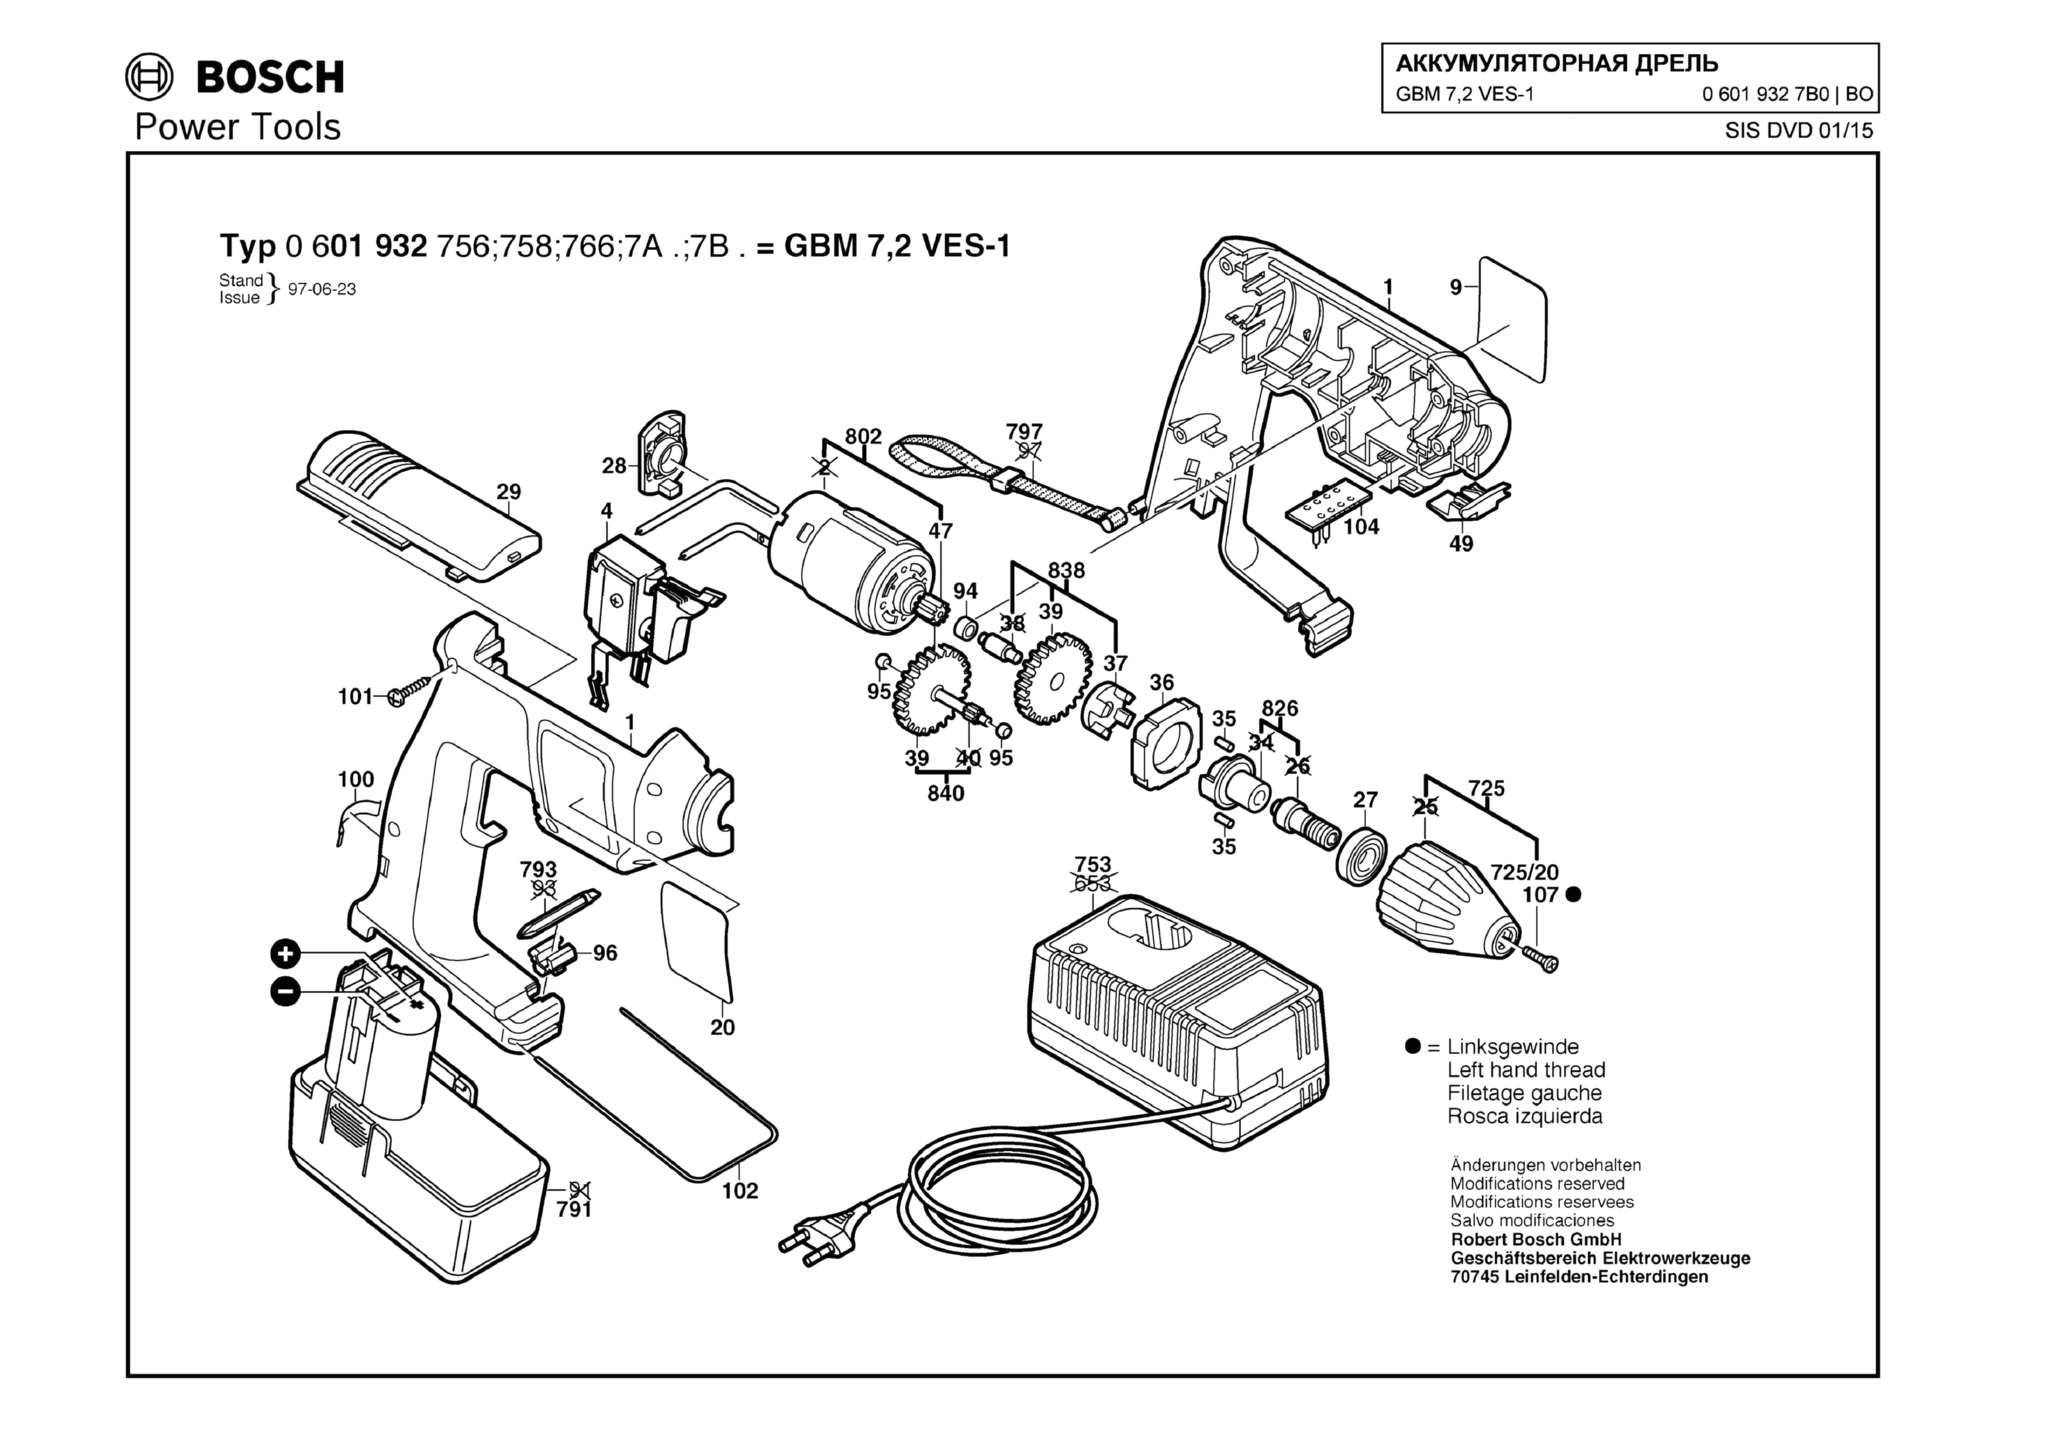 Запчасти, схема и деталировка Bosch GBM 7,2 VES-1 (ТИП 06019327B0)